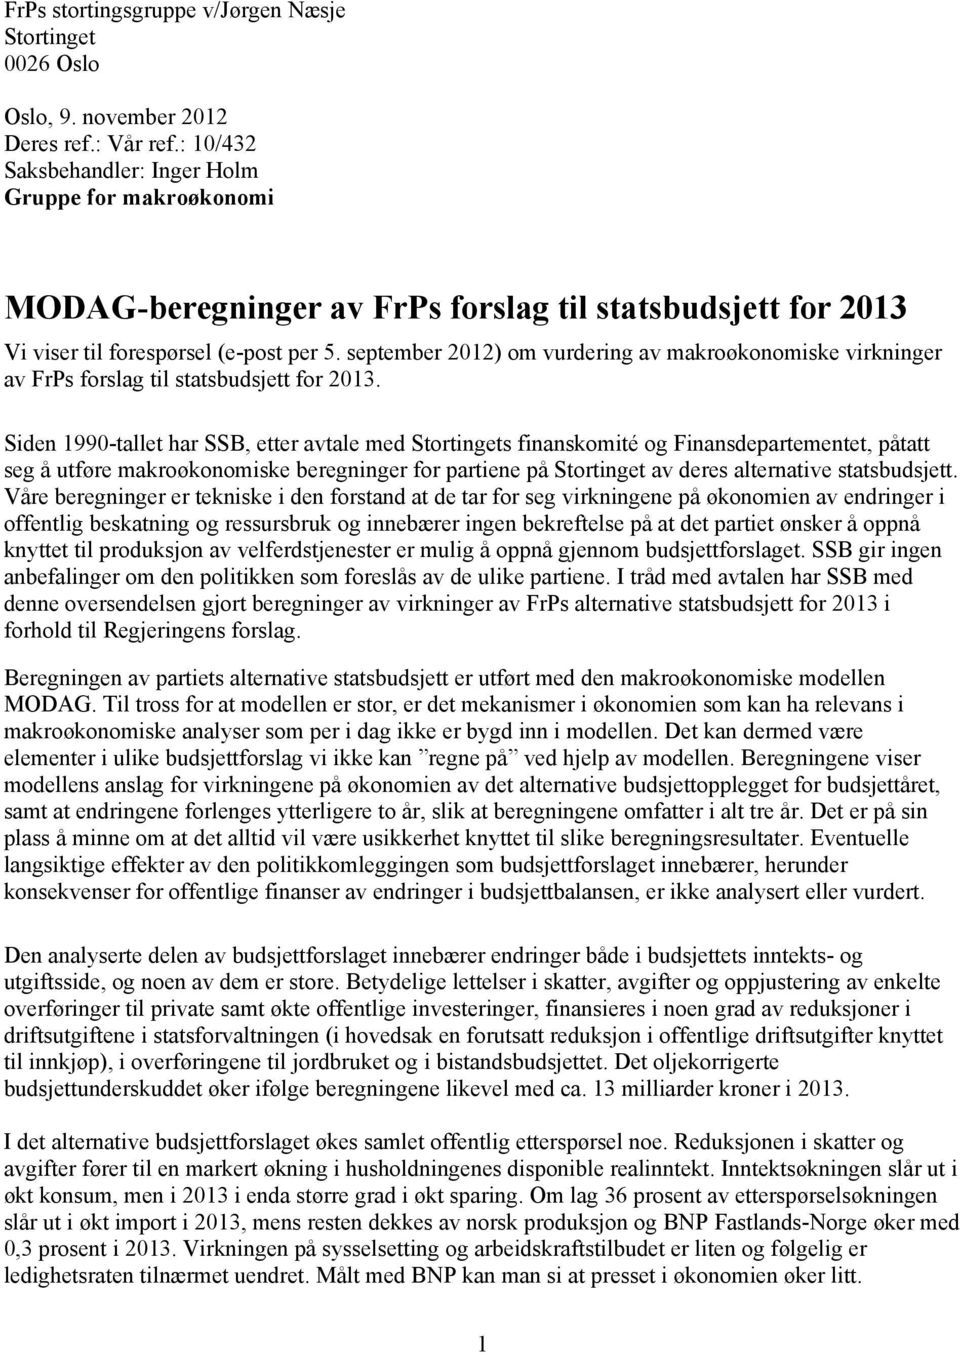 september 2012) om vurdering av makroøkonomiske virkninger av FrPs forslag til statsbudsjett for 2013.